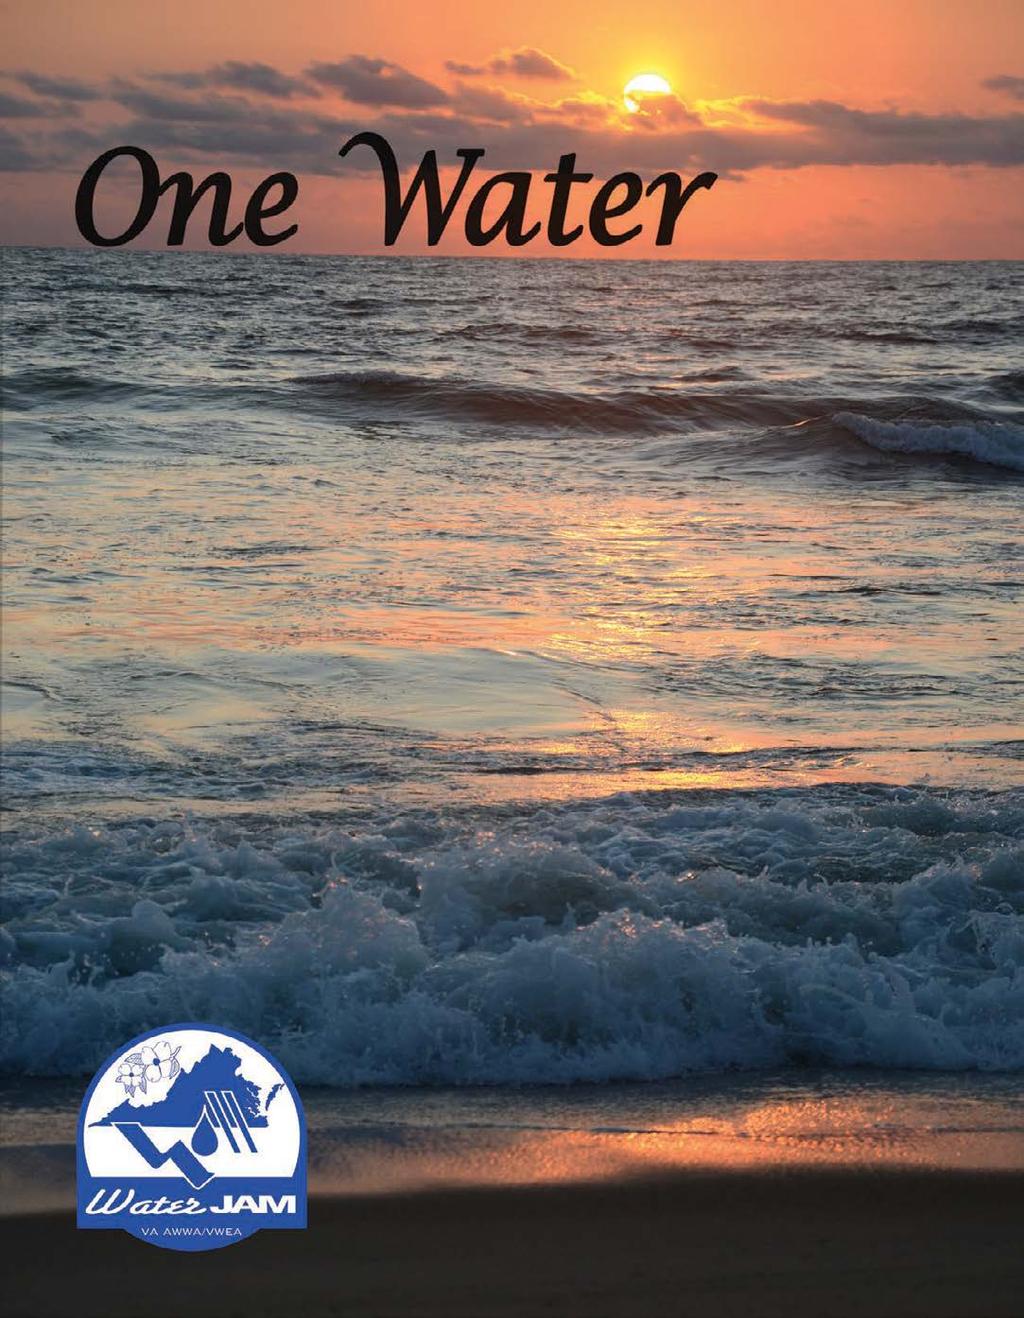 伀渀攀圀愀琀攀爀圀愀琀攀爀䨀䄀䴀 㘀 On behalf of the Virginia Section of the American Water Works Association and the Virginia Water Environment Association, we want to extend a warm invitation to the 2016 Joint